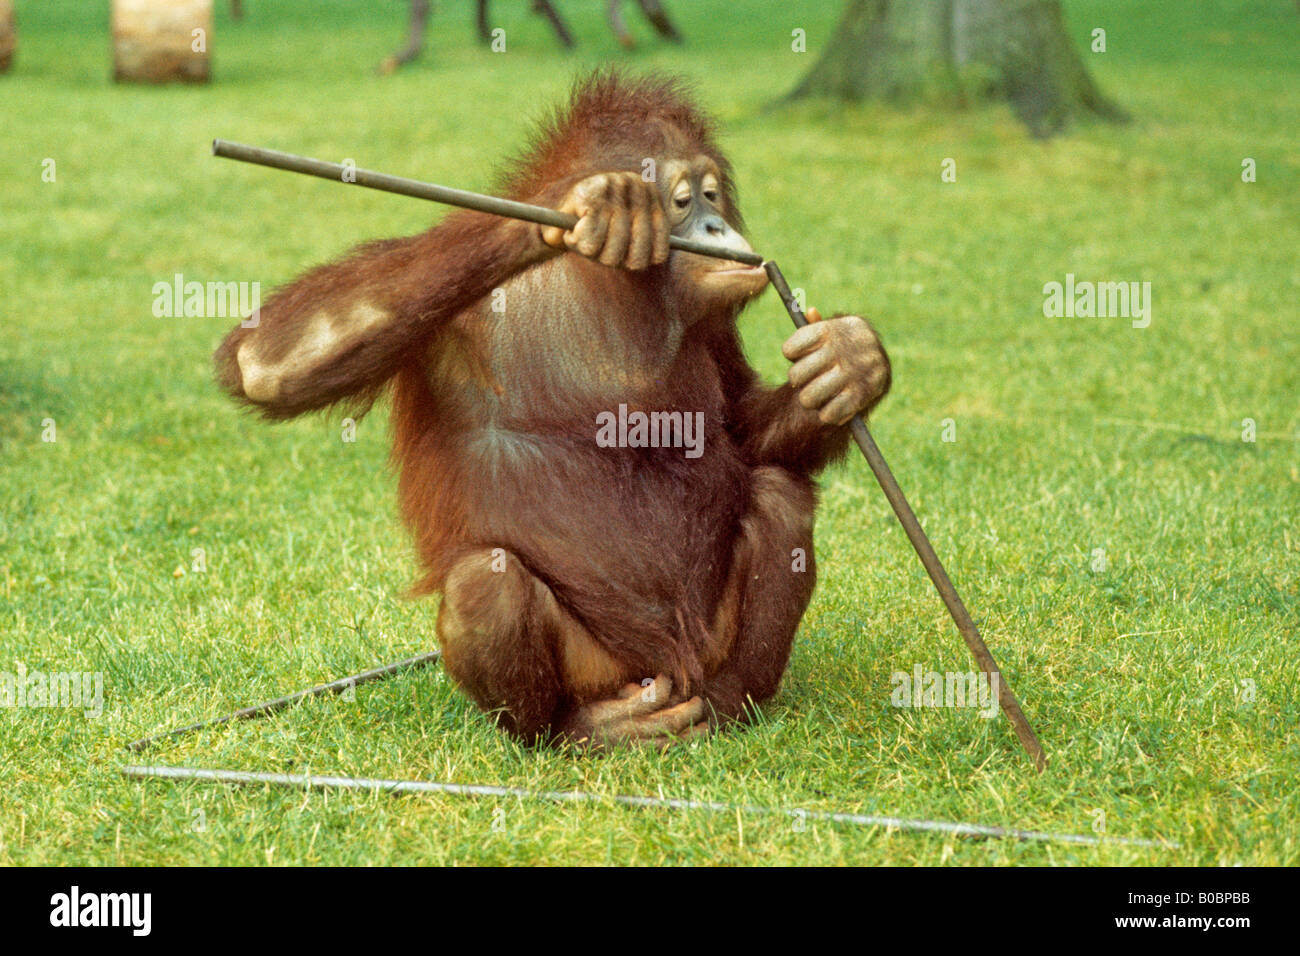 El orangután, el orangután (Pongo pygmaeus), Buschi teniendo una prueba de inteligencia en el Zoológico de Osnabrück, Alemania Foto de stock